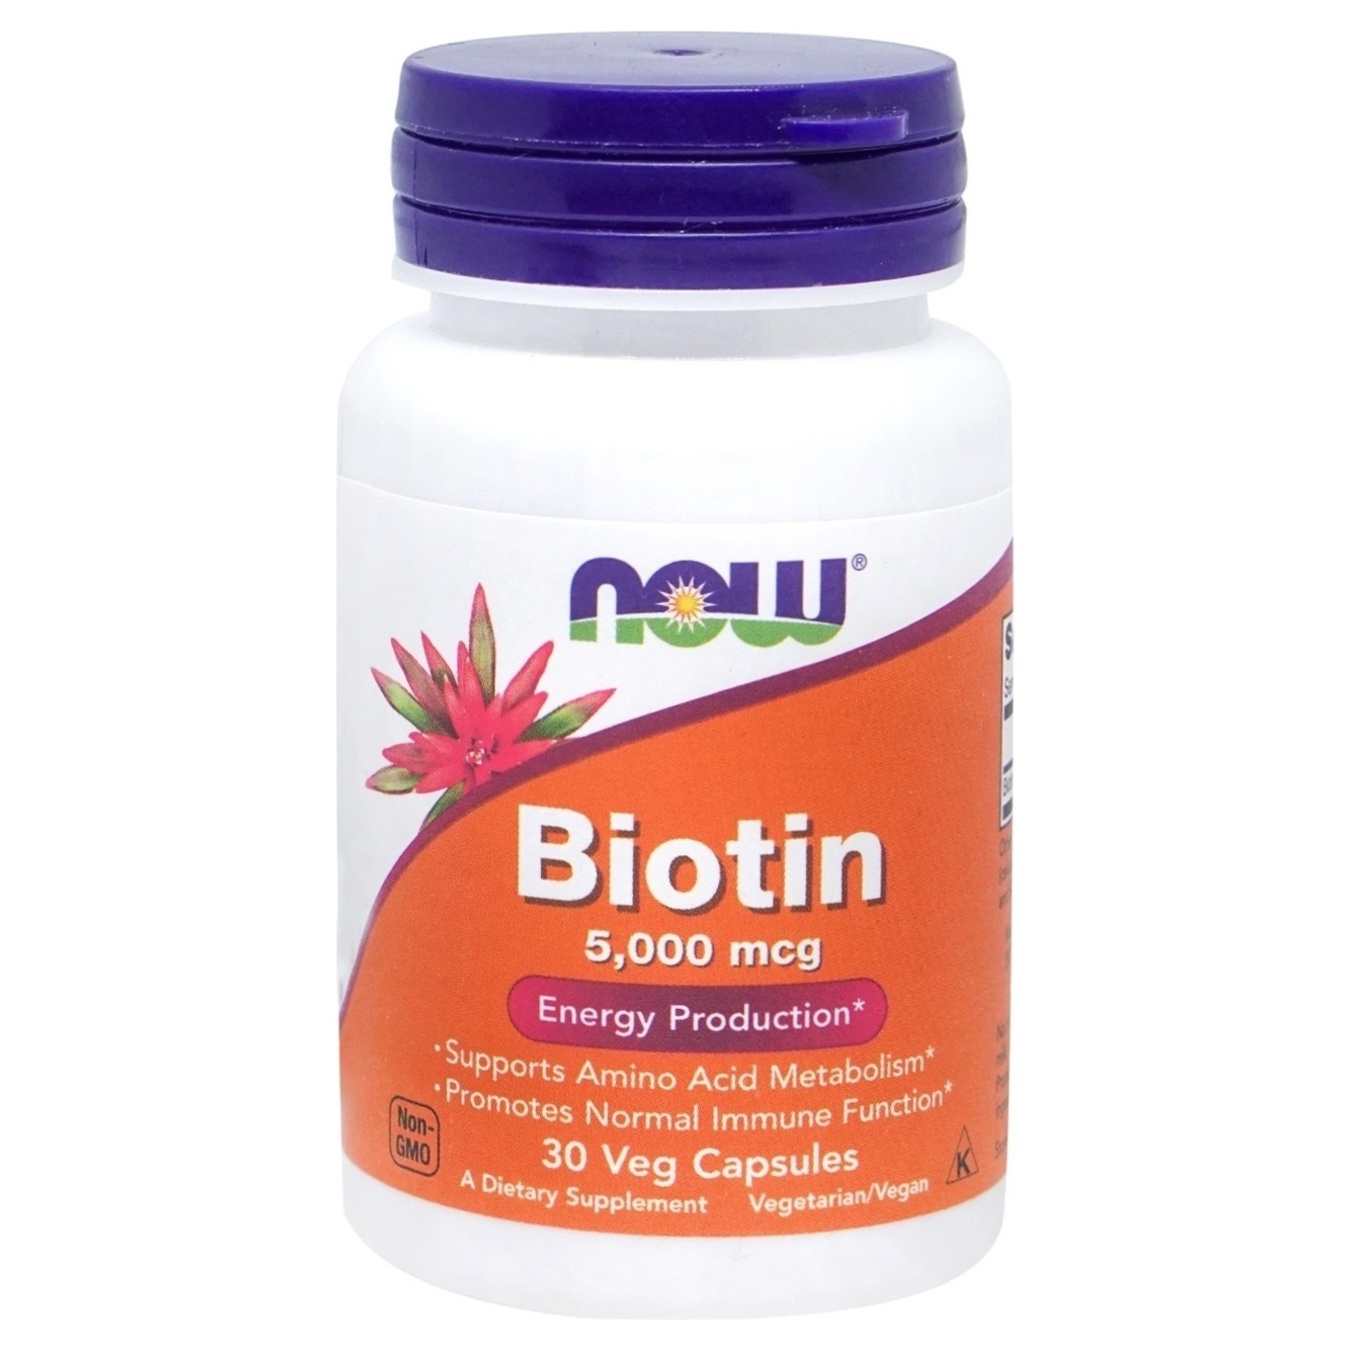 NOW vitamins biotin in capsules 5000mcg #30